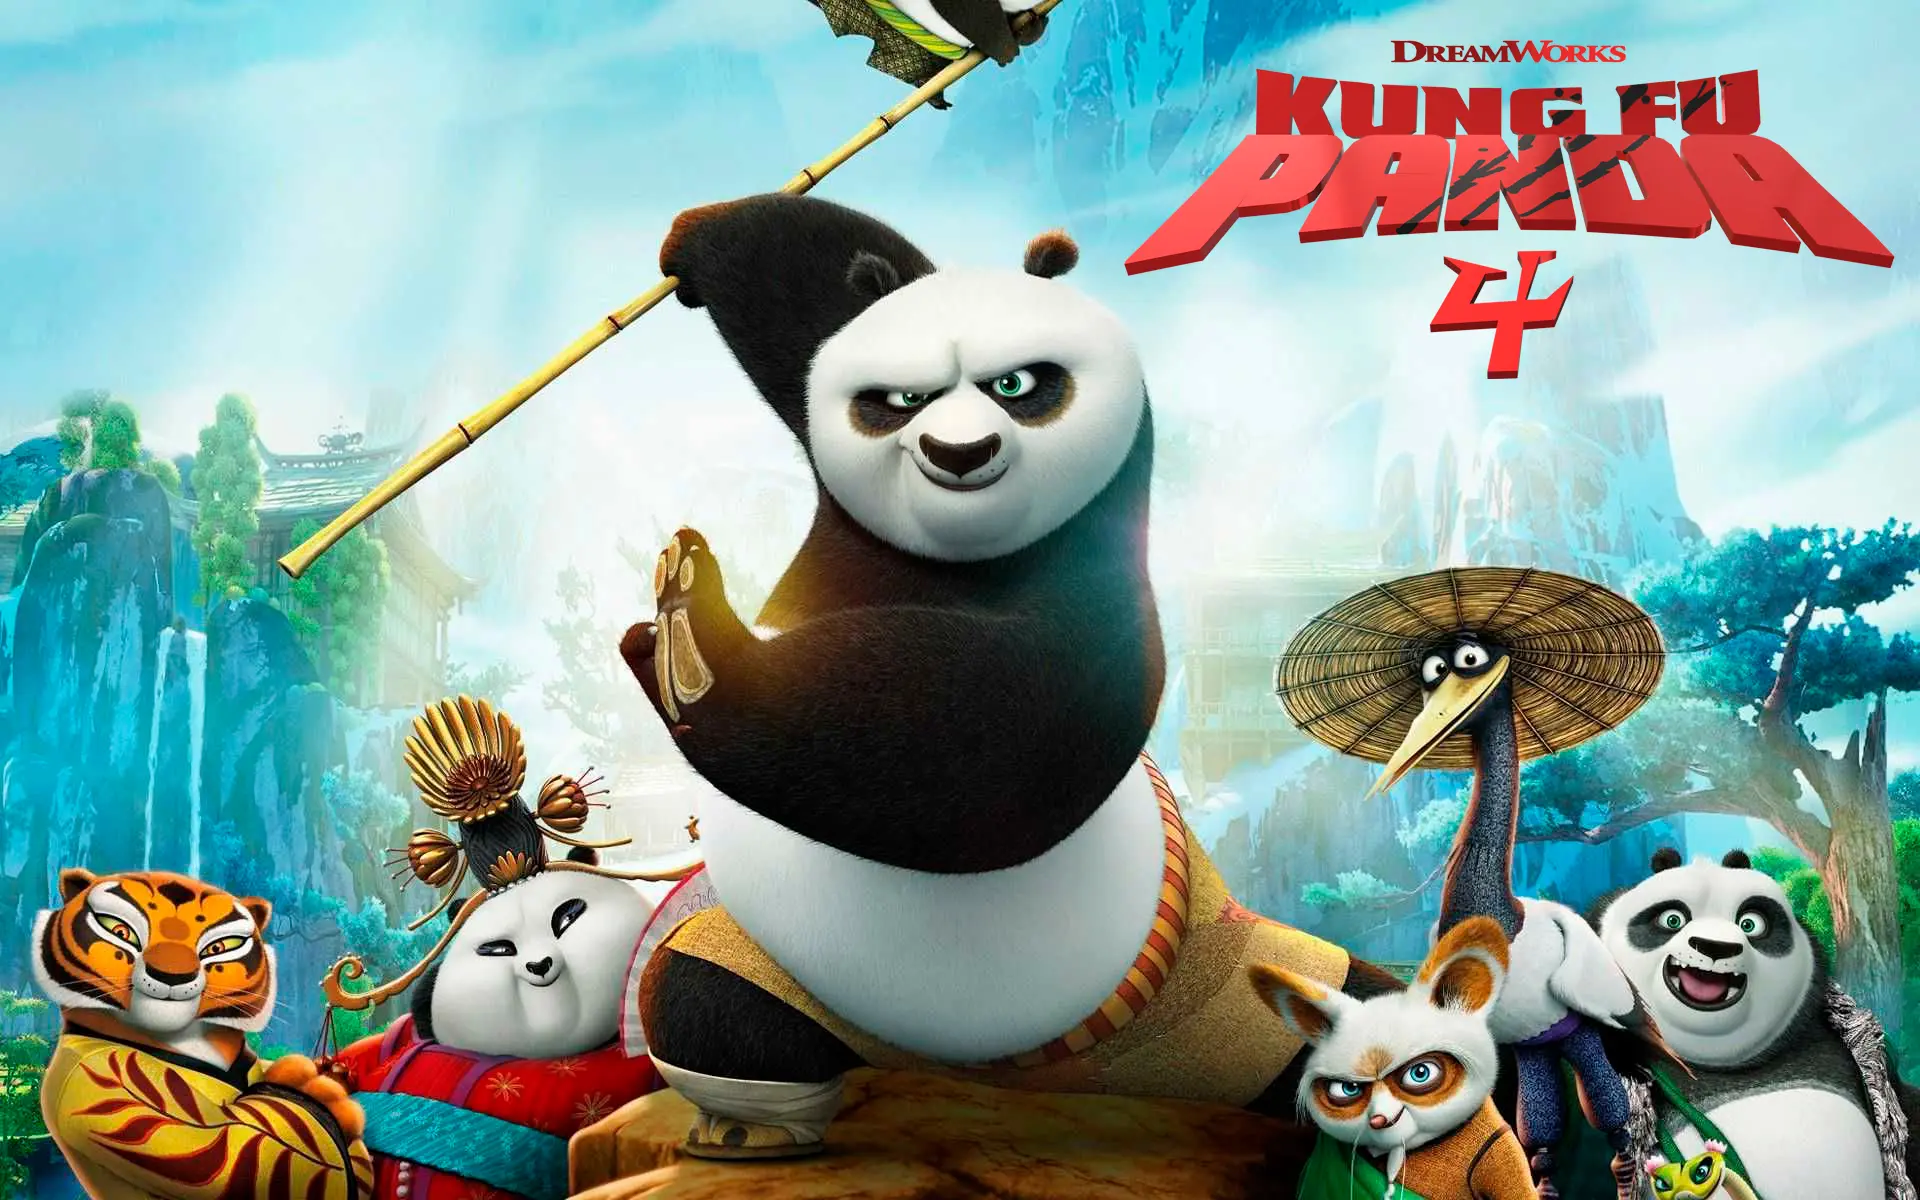 Movie Kung Fu Panda 4 wallpaper 4 | Background Image